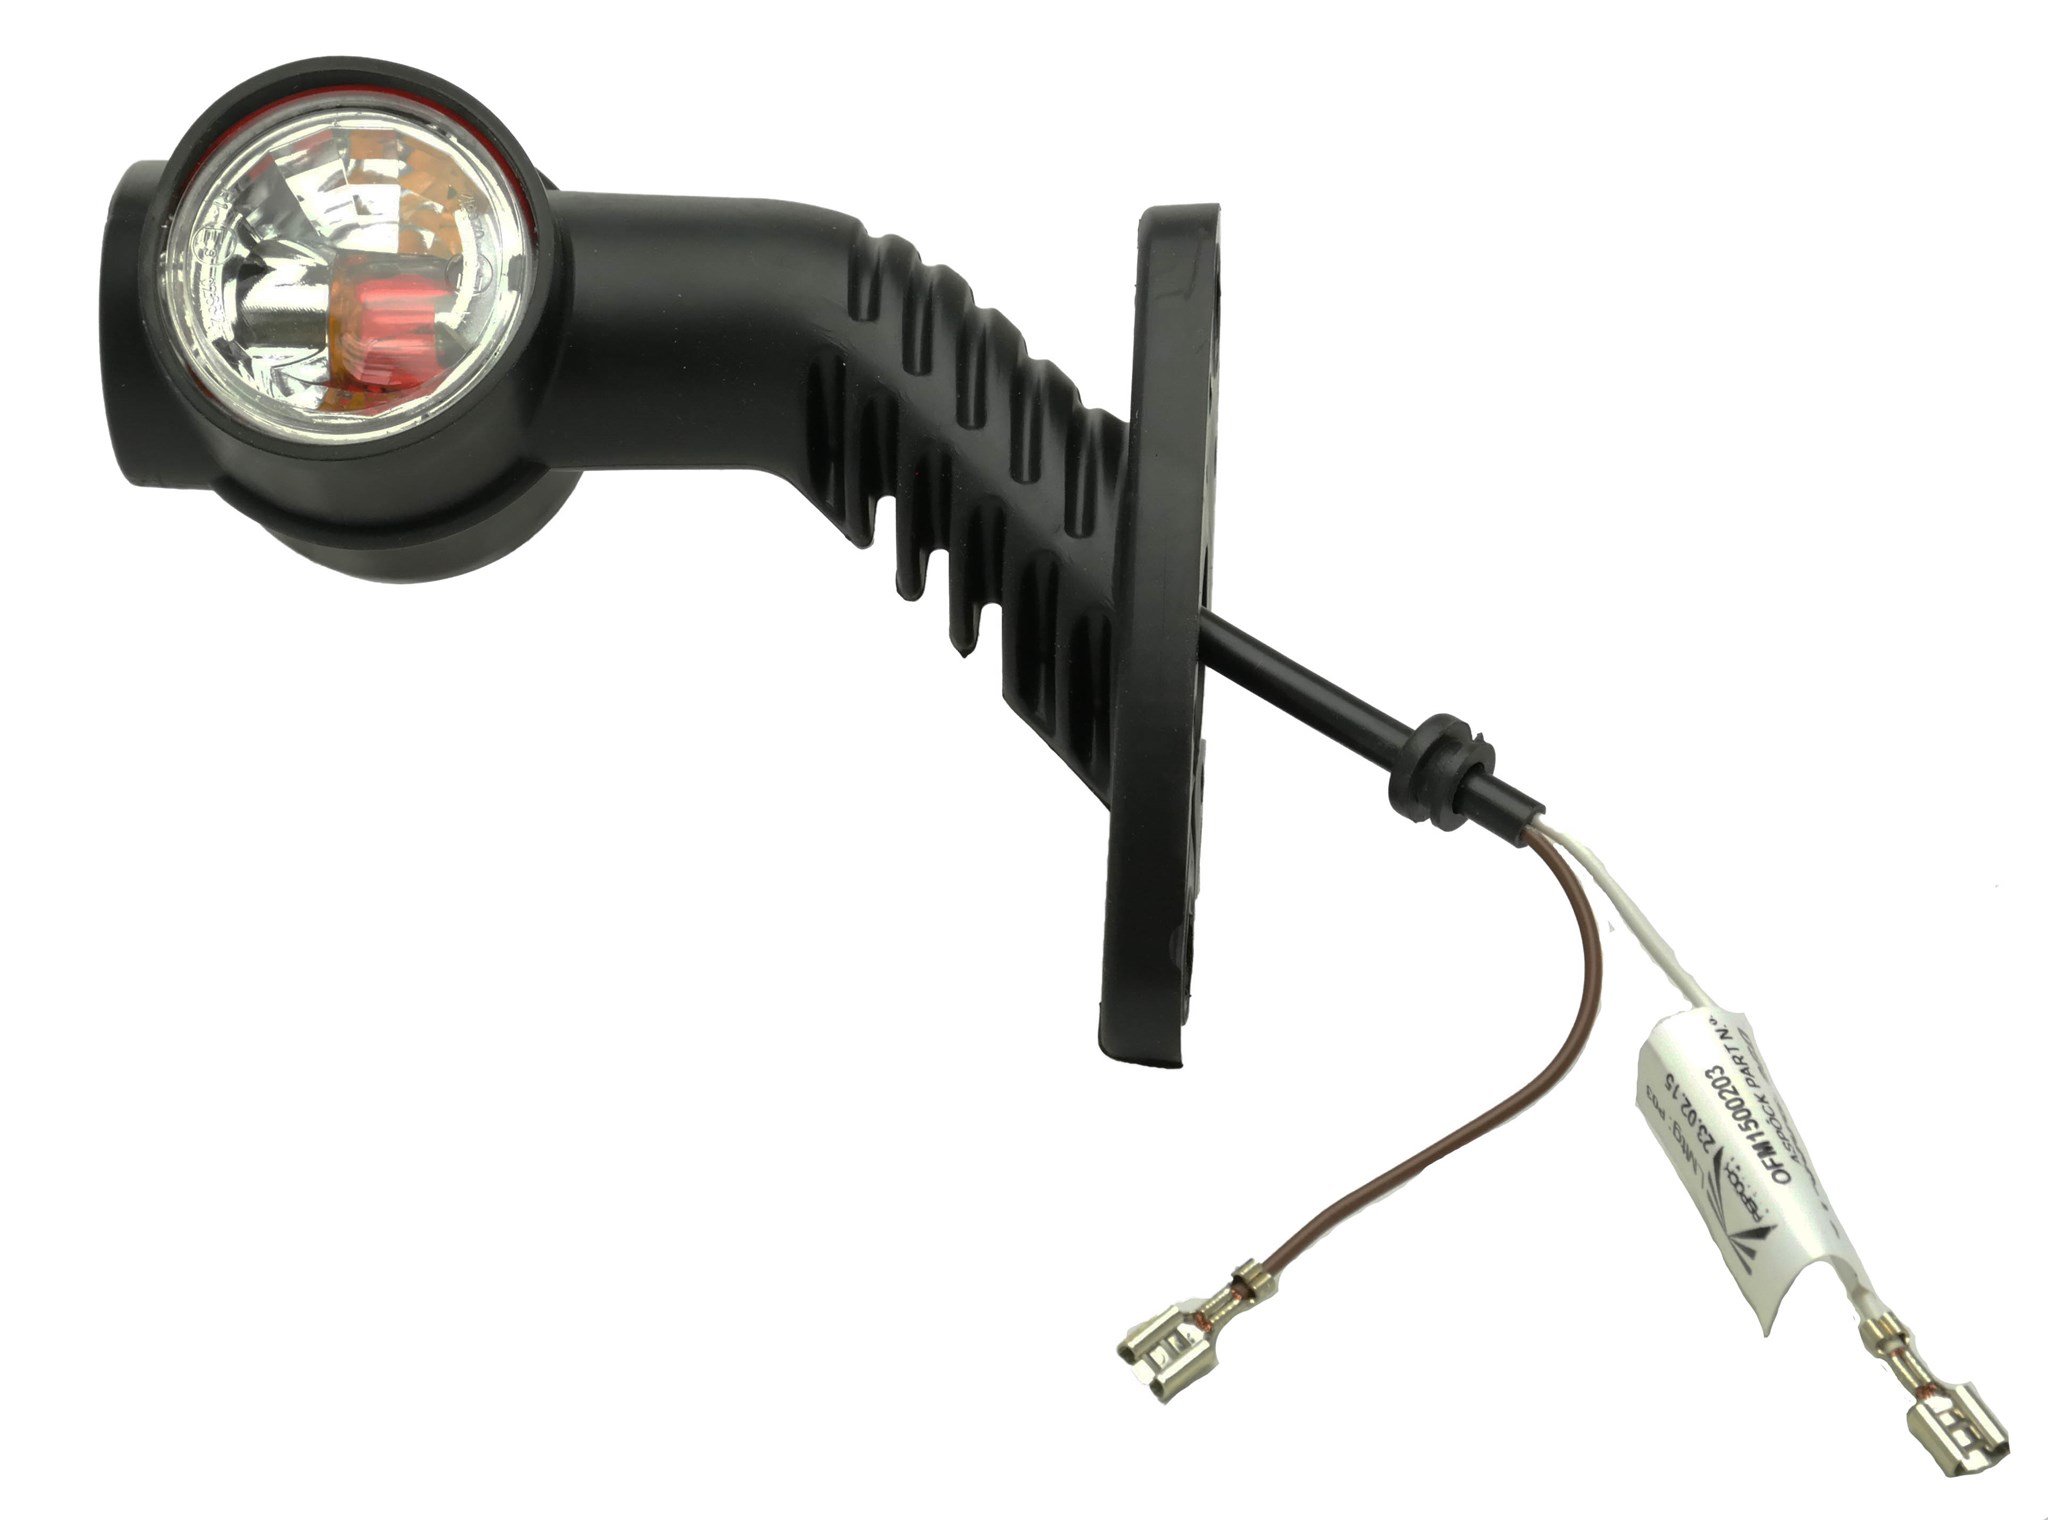 A.PiERiNGER. LED Standlicht für Europoint II orig Aspöck 12-1560-001 mit  Zulassung R E9 02.25497